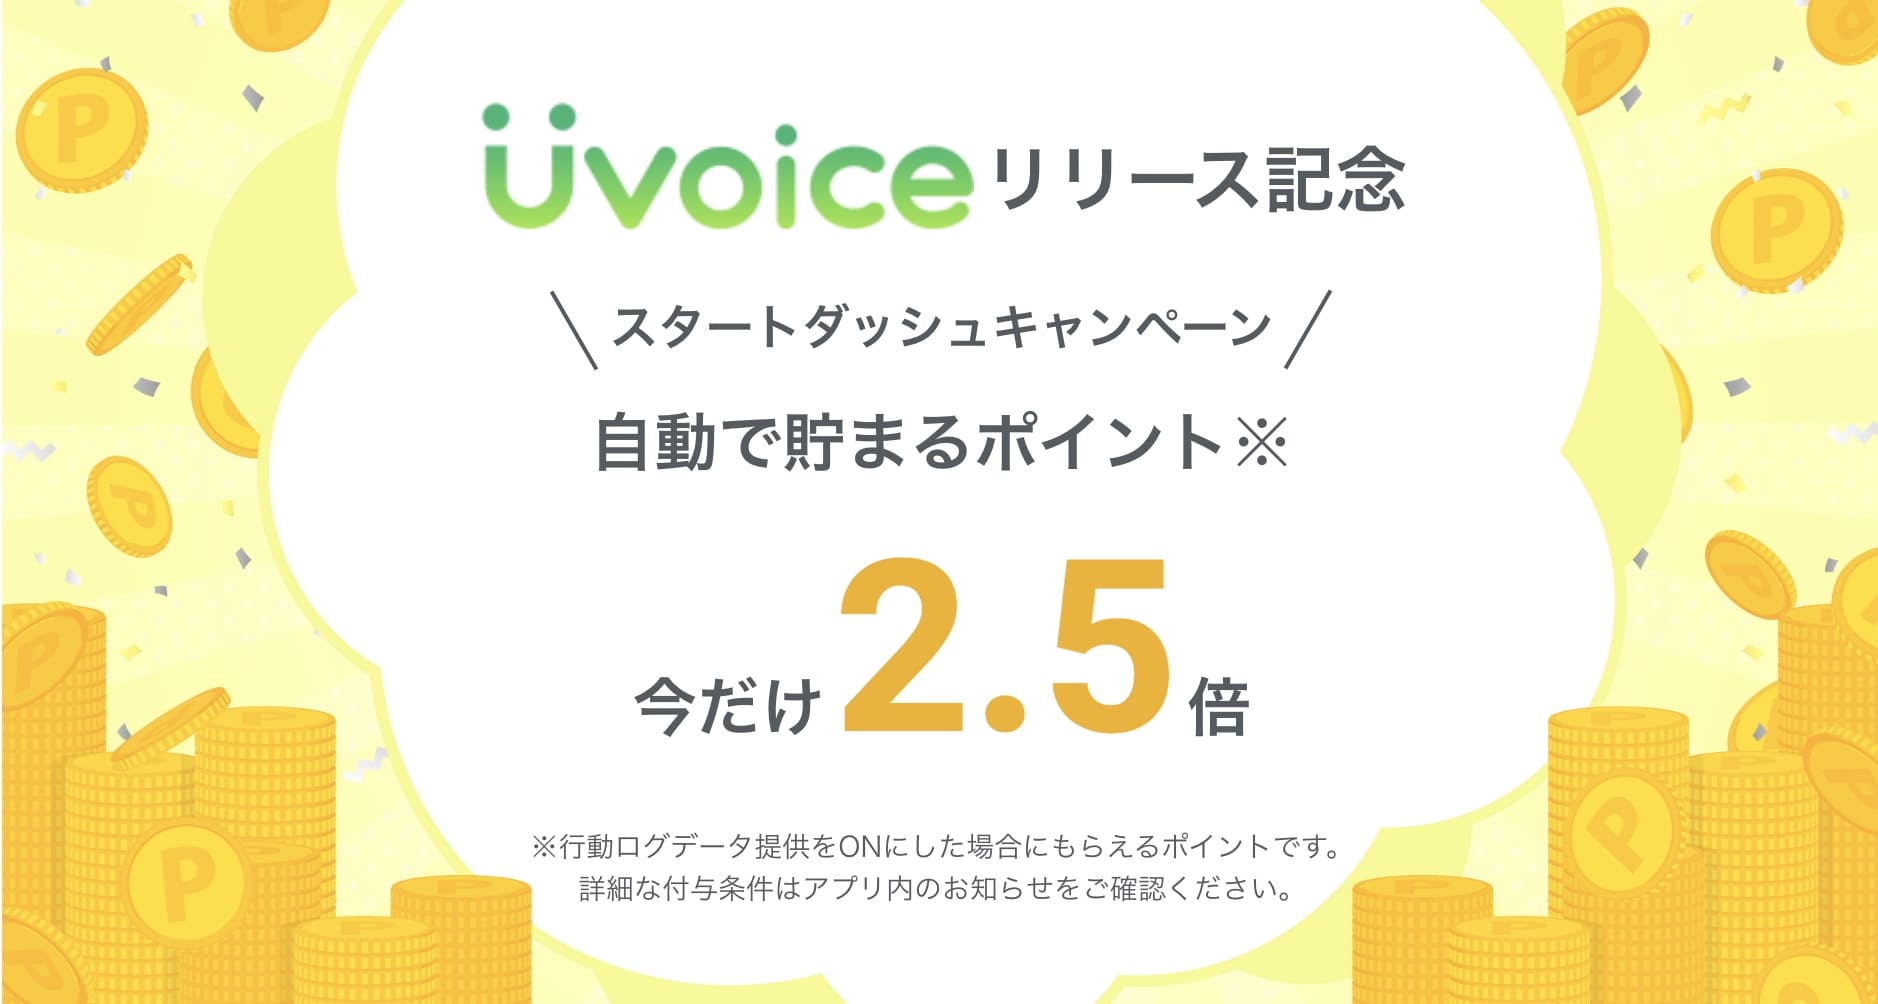 Uvoice_キャンペーン